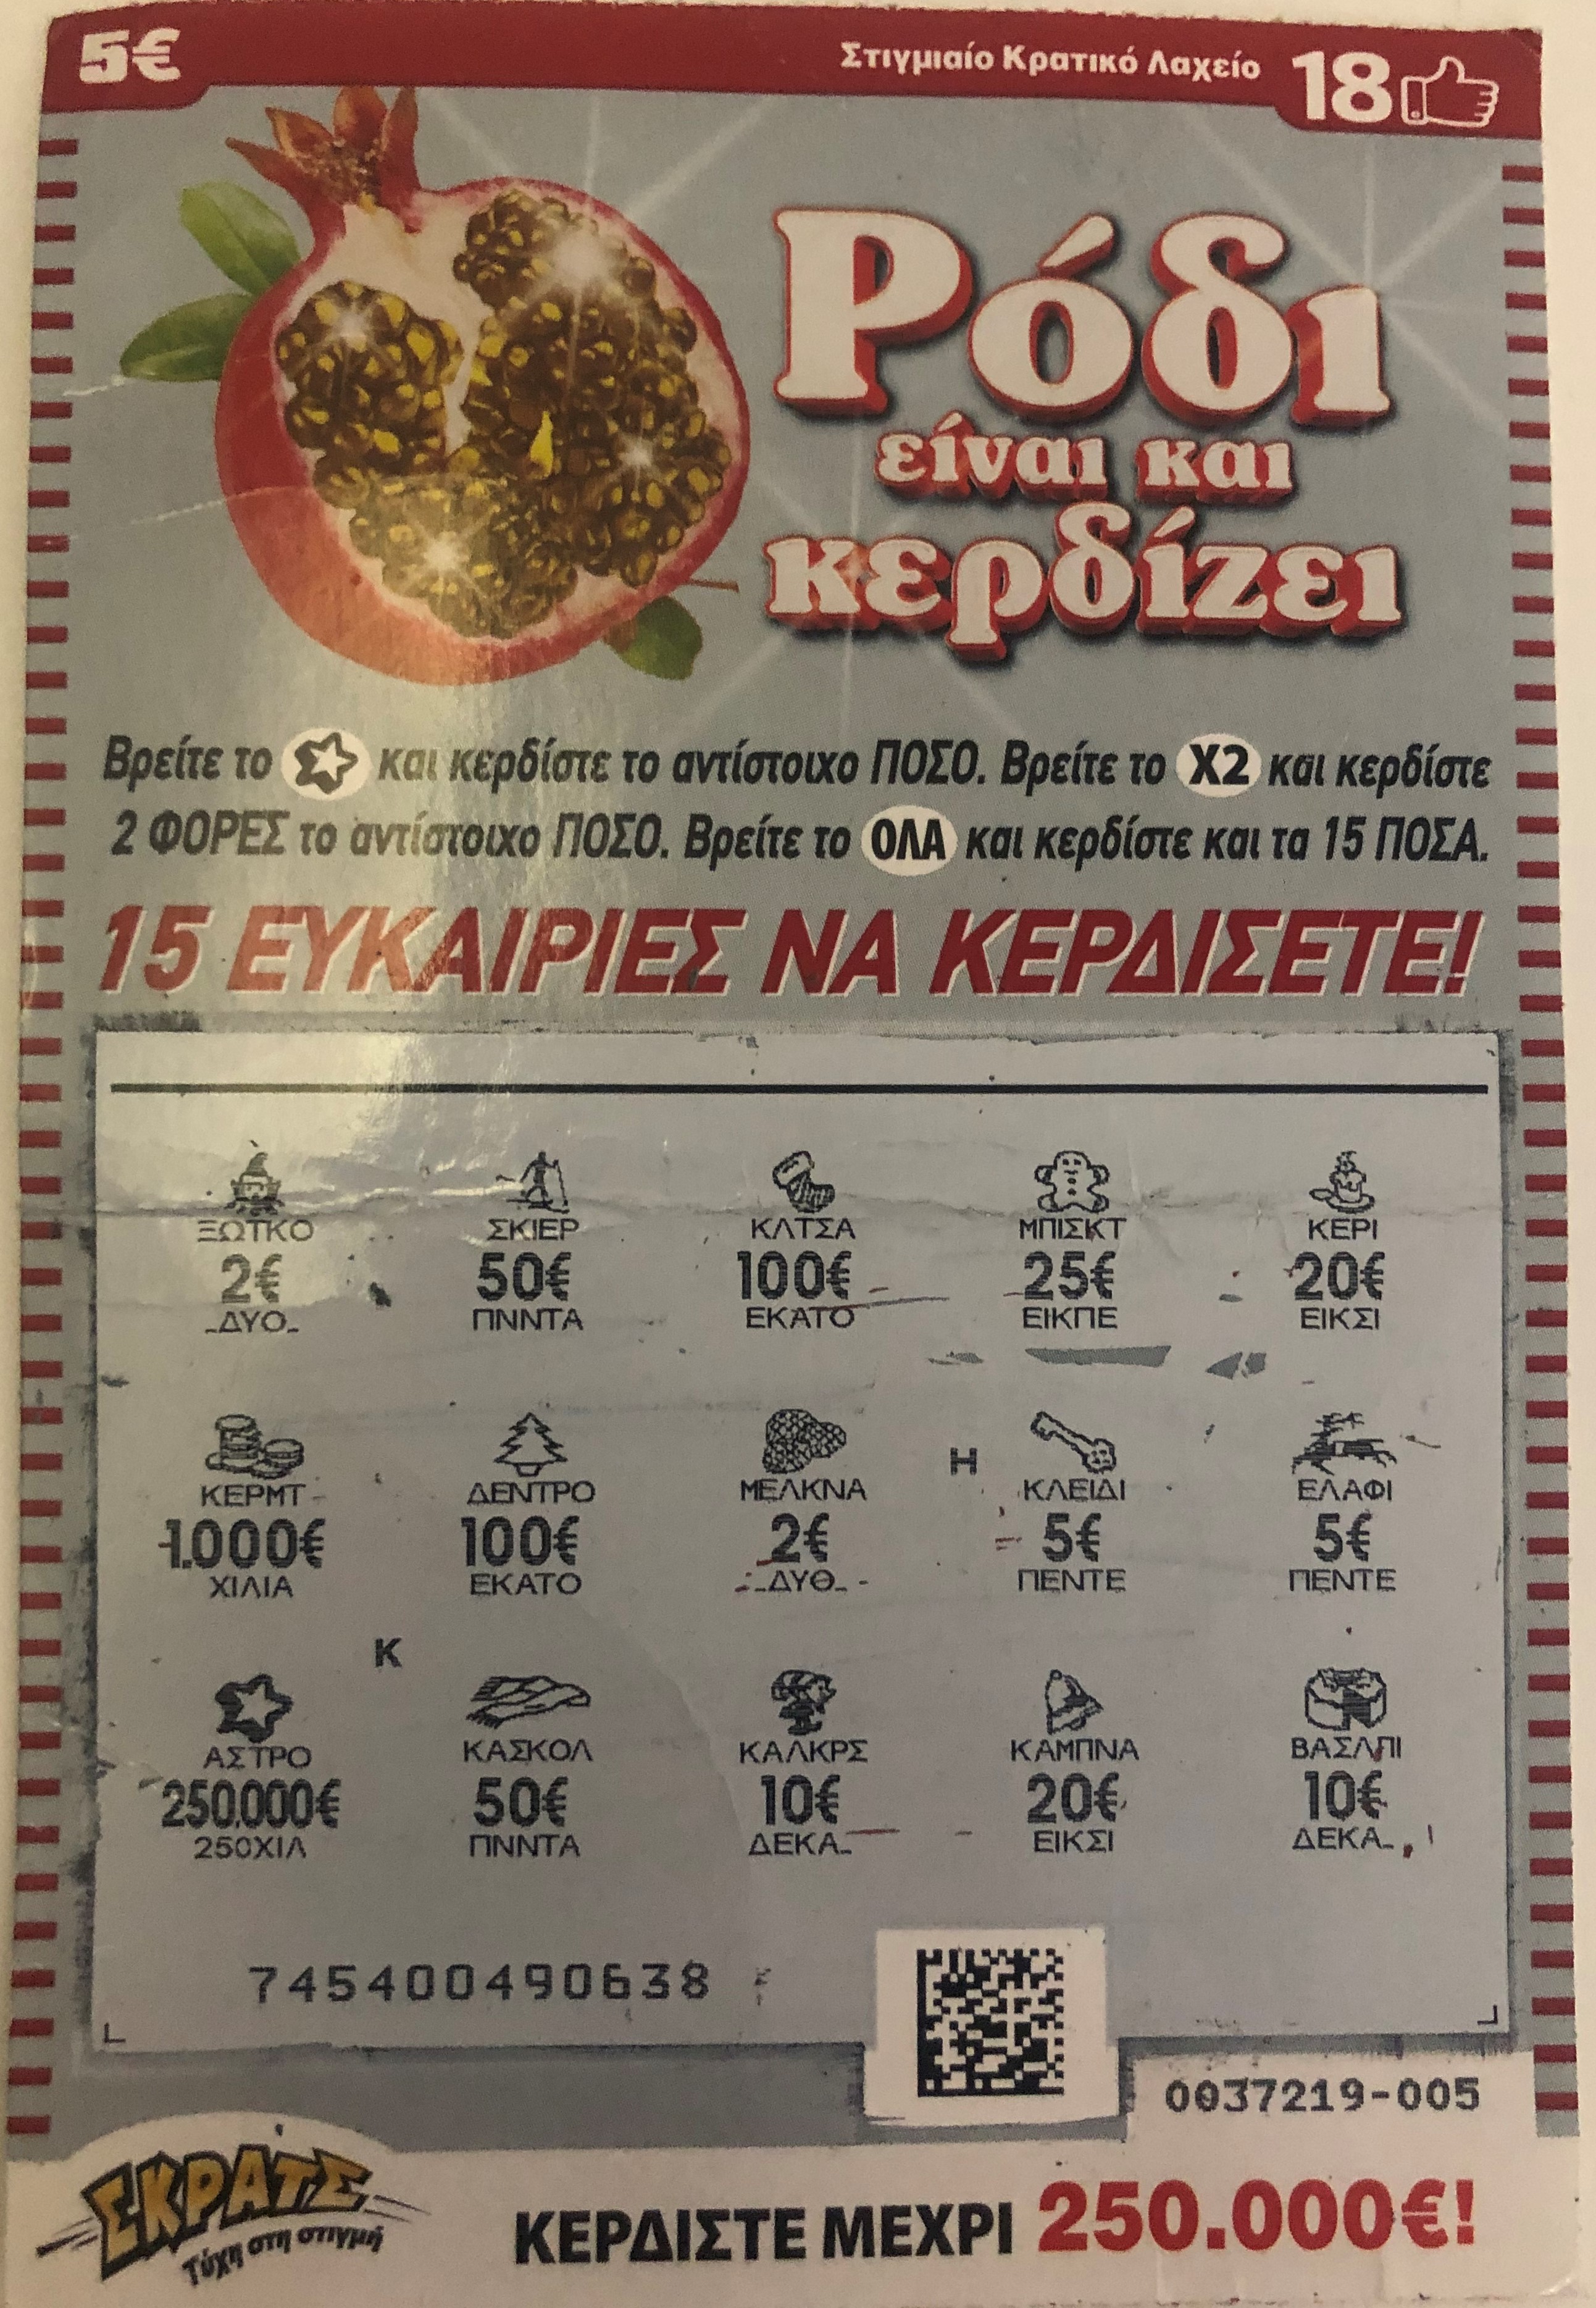 ΣΚΡΑΤΣ ΡΟΔΙ 250.000